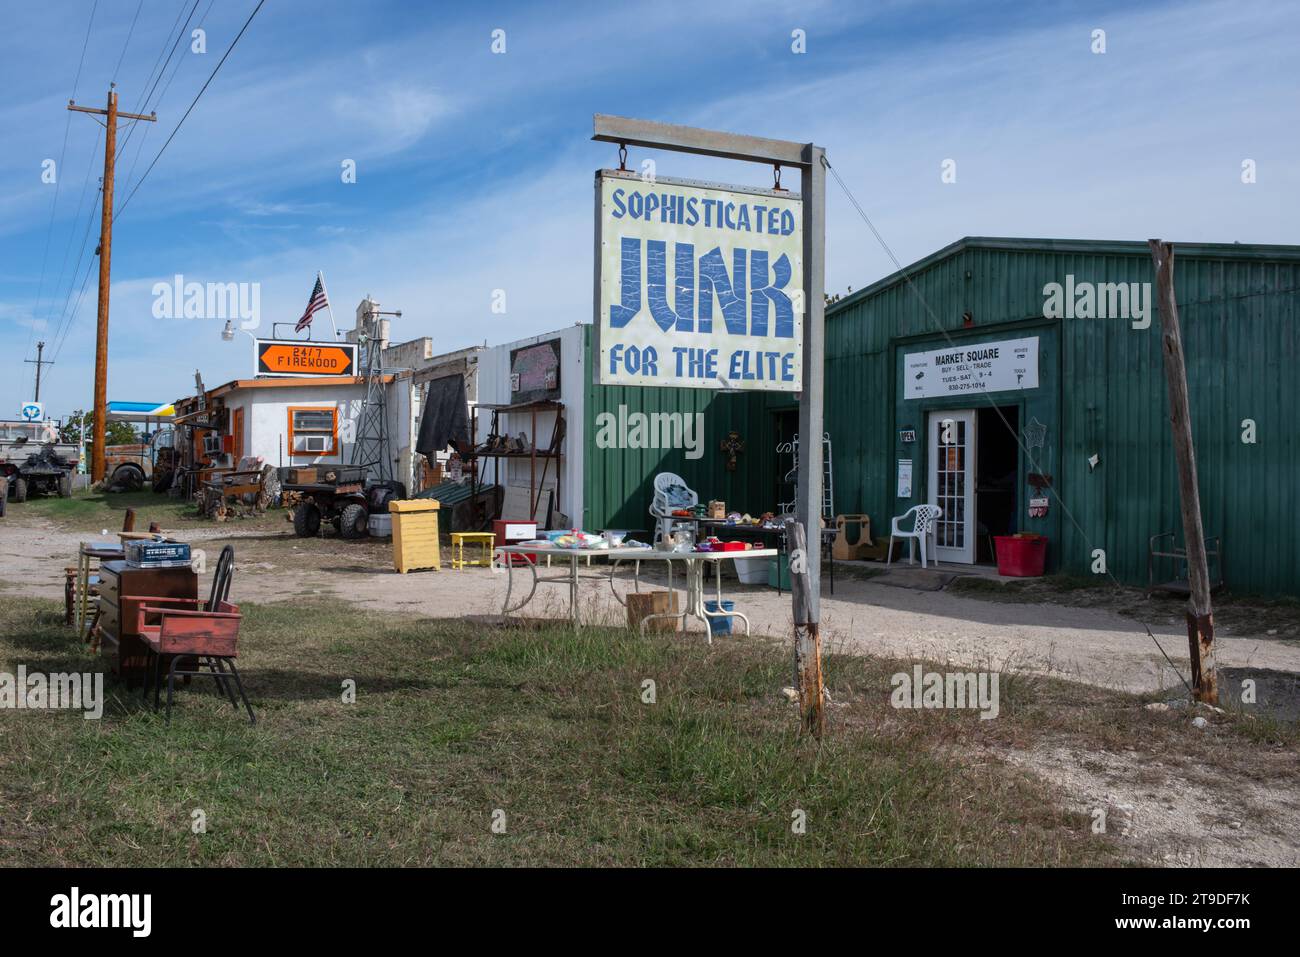 Äußere des Secondhand-Stores mit Schild, das besagt: "Raffinierter Juni für die Elite", Möbel vor der Tür, Leakey, Uvalde County, Texas, Usa. Stockfoto